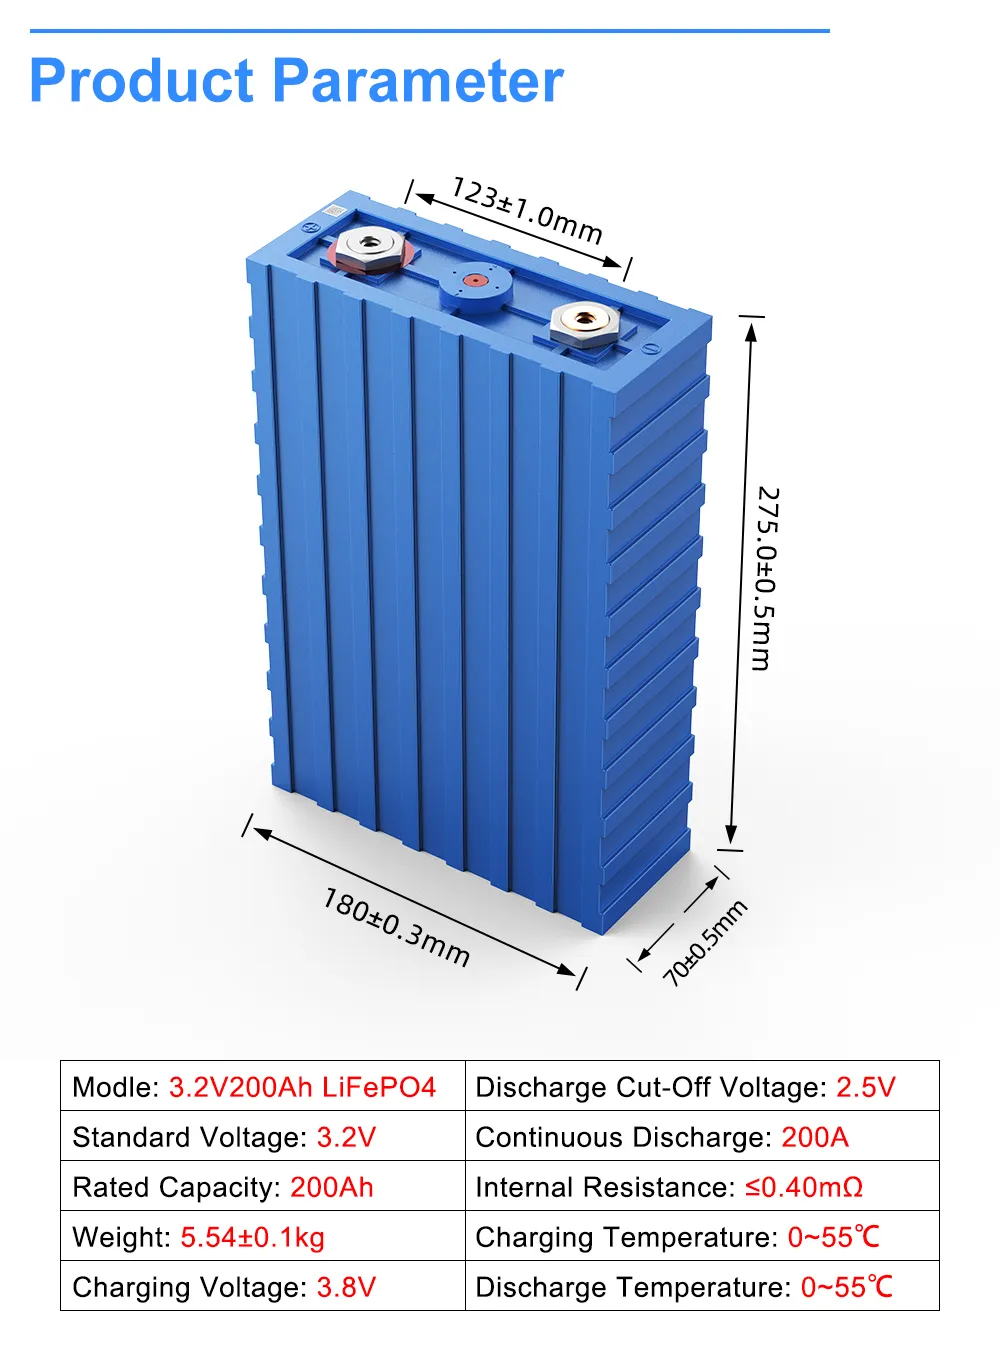 TSLWATT-batería de litio Lifepo4 de grado B, célula para sistema de energía Solar, RV, coche eléctrico, UE, EE. UU., libre de impuestos, 3,2 v, 200Ah